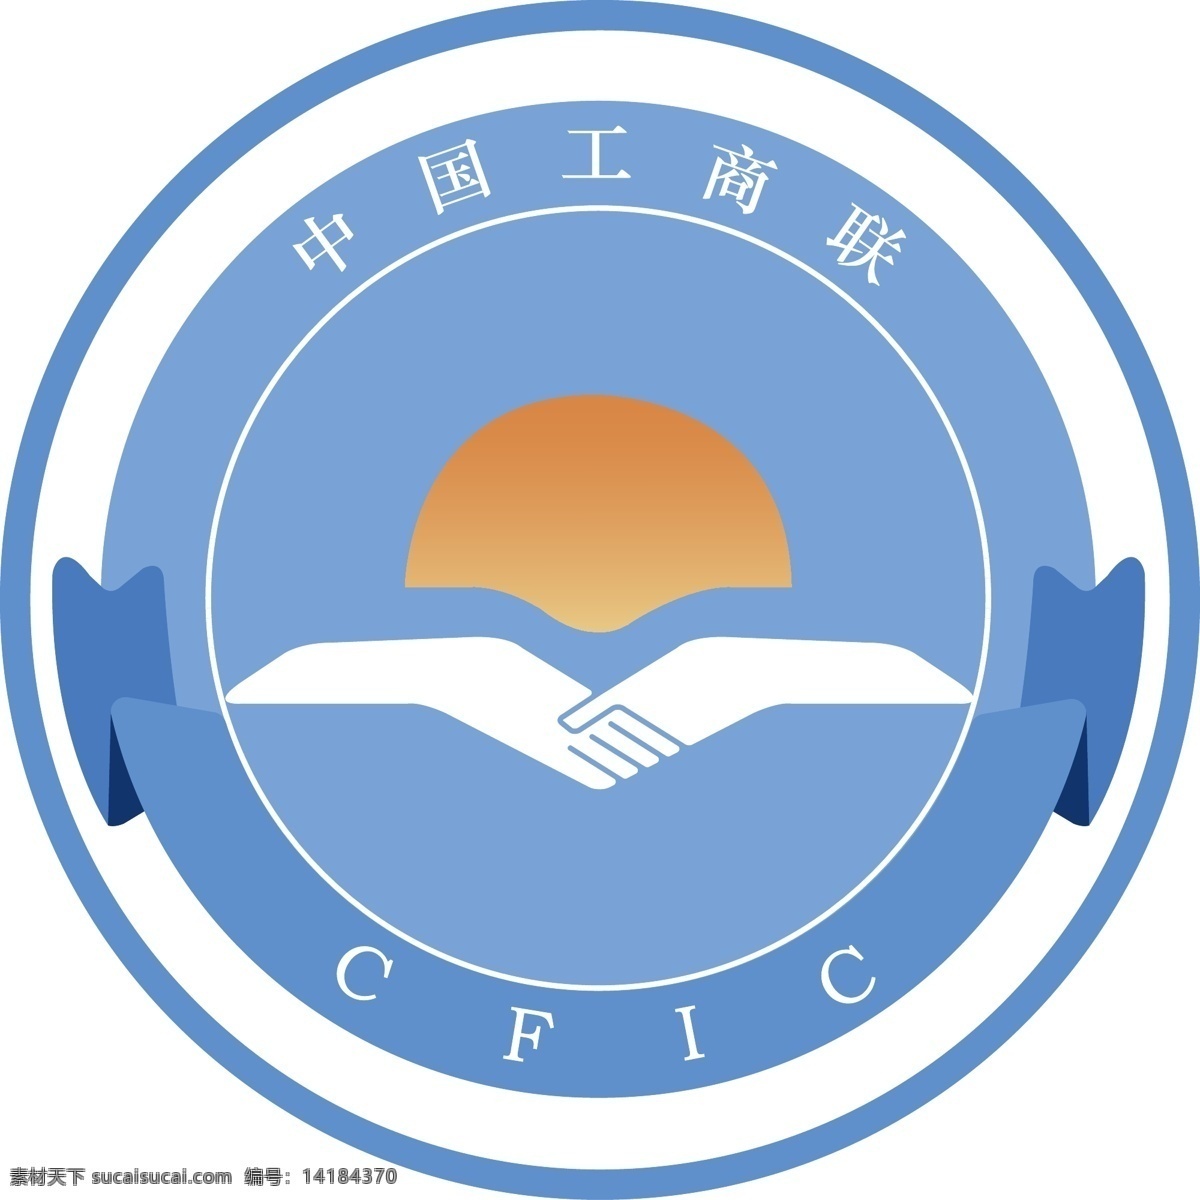 中国 工商联 新 标志 中国工商联 新标志 工商联新标志 标志图标 公共标识标志